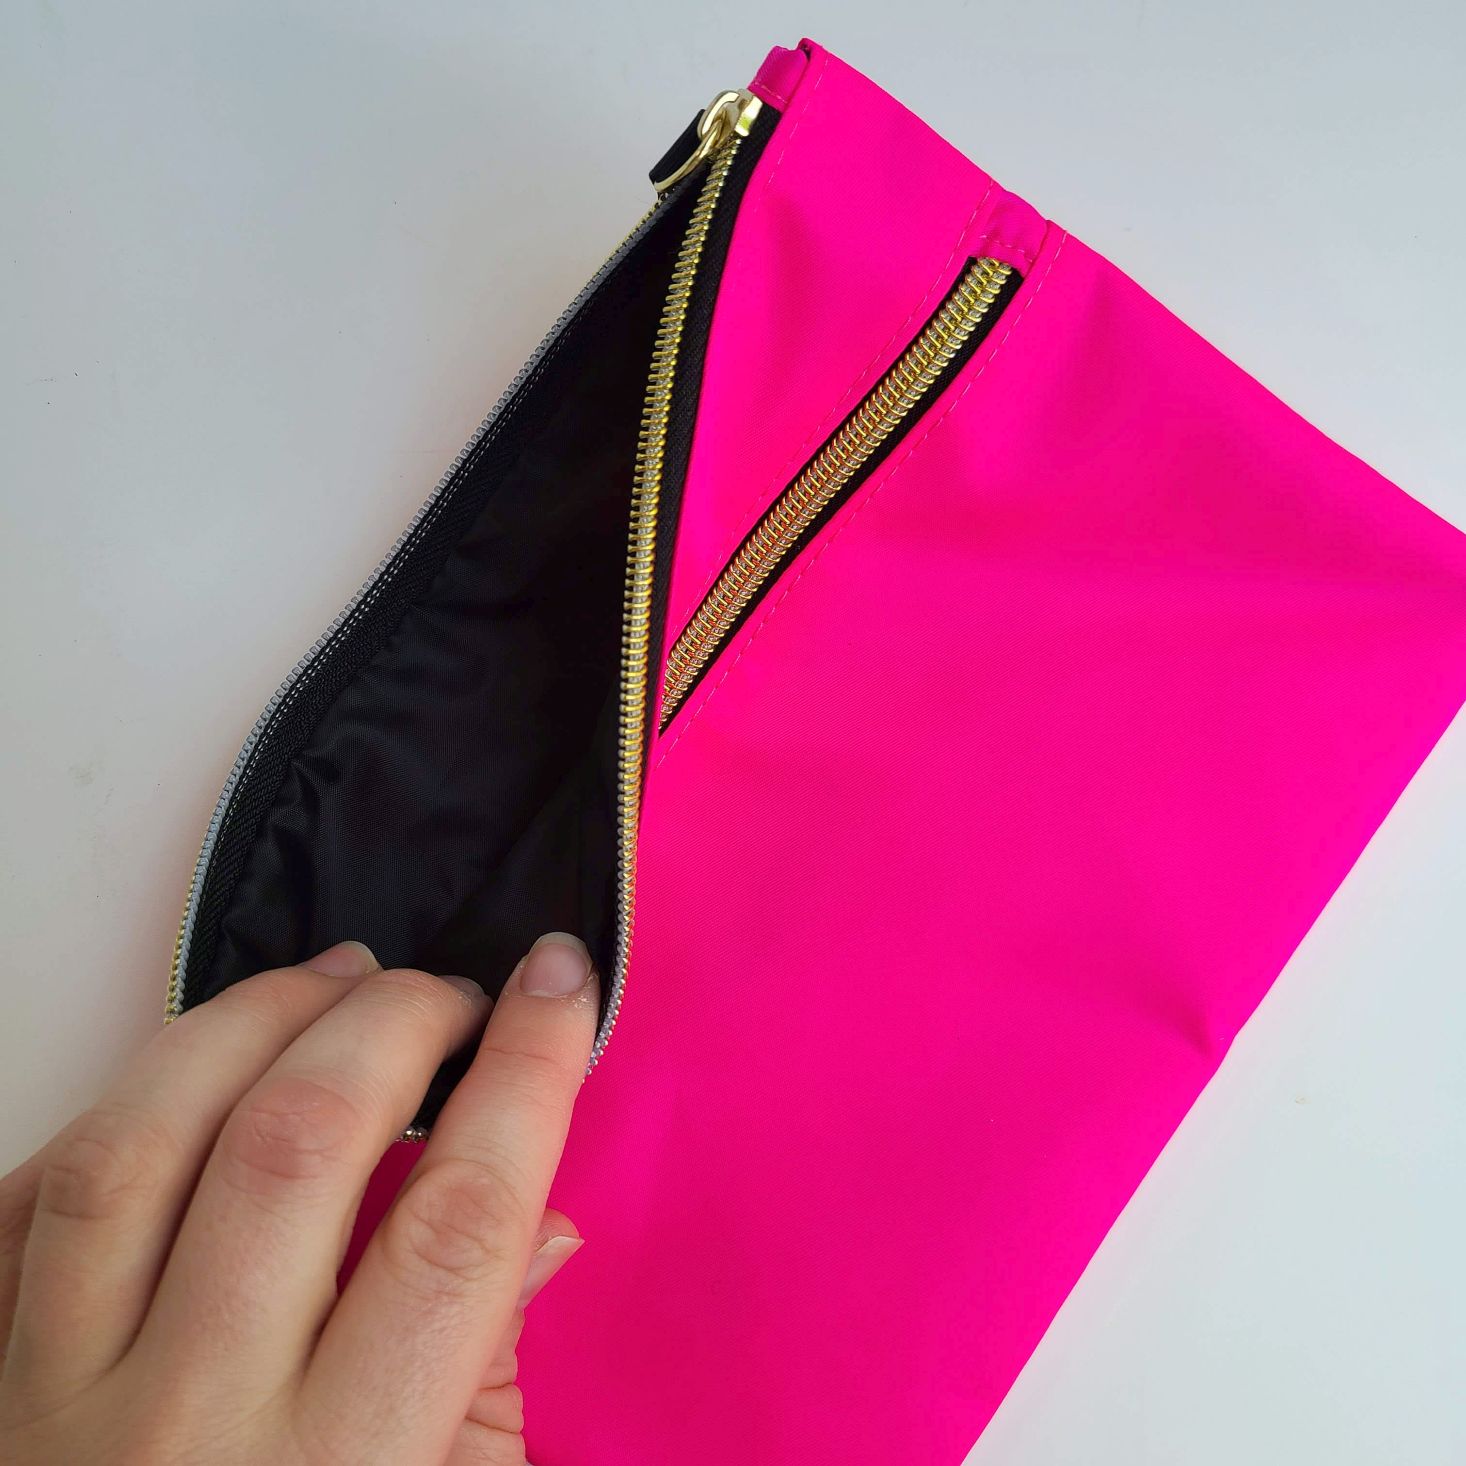 Tarte Create Your Own Beauty Kit June 2020 zipper pouch inside